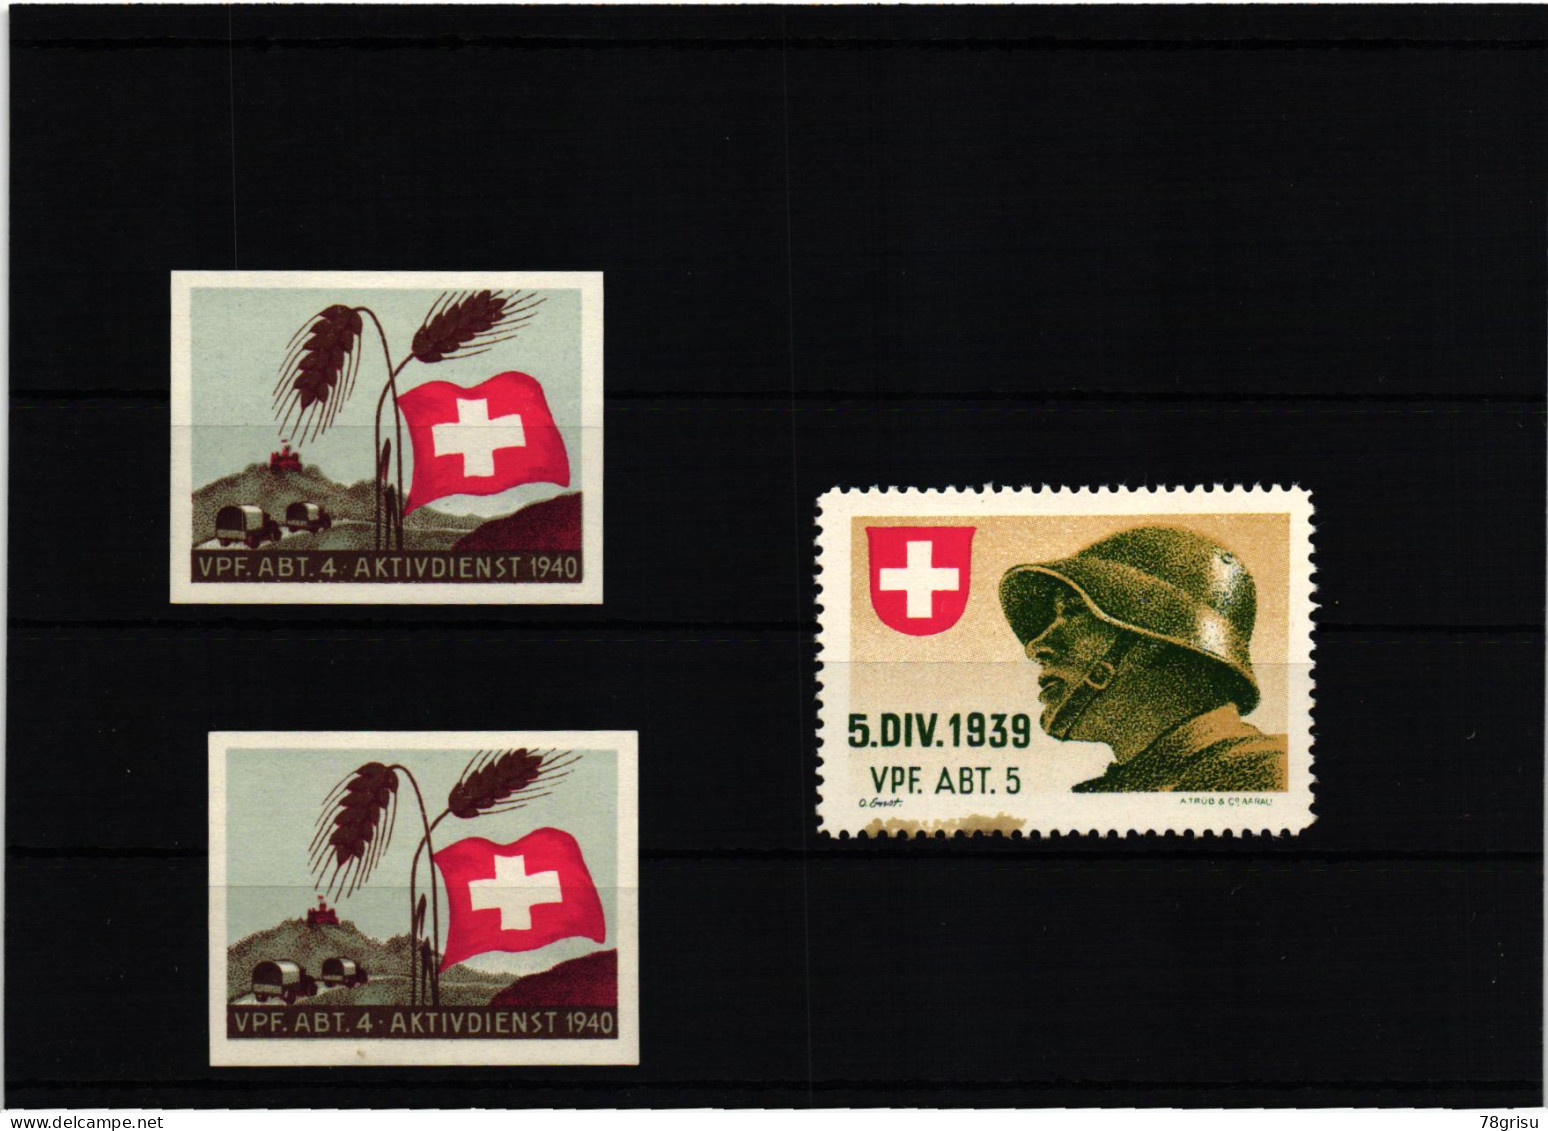 Schweiz Soldatenmarken, Vpf.Abt. Verpflegungs Abteilung Kohldampf 1939 1940 - Vignetten